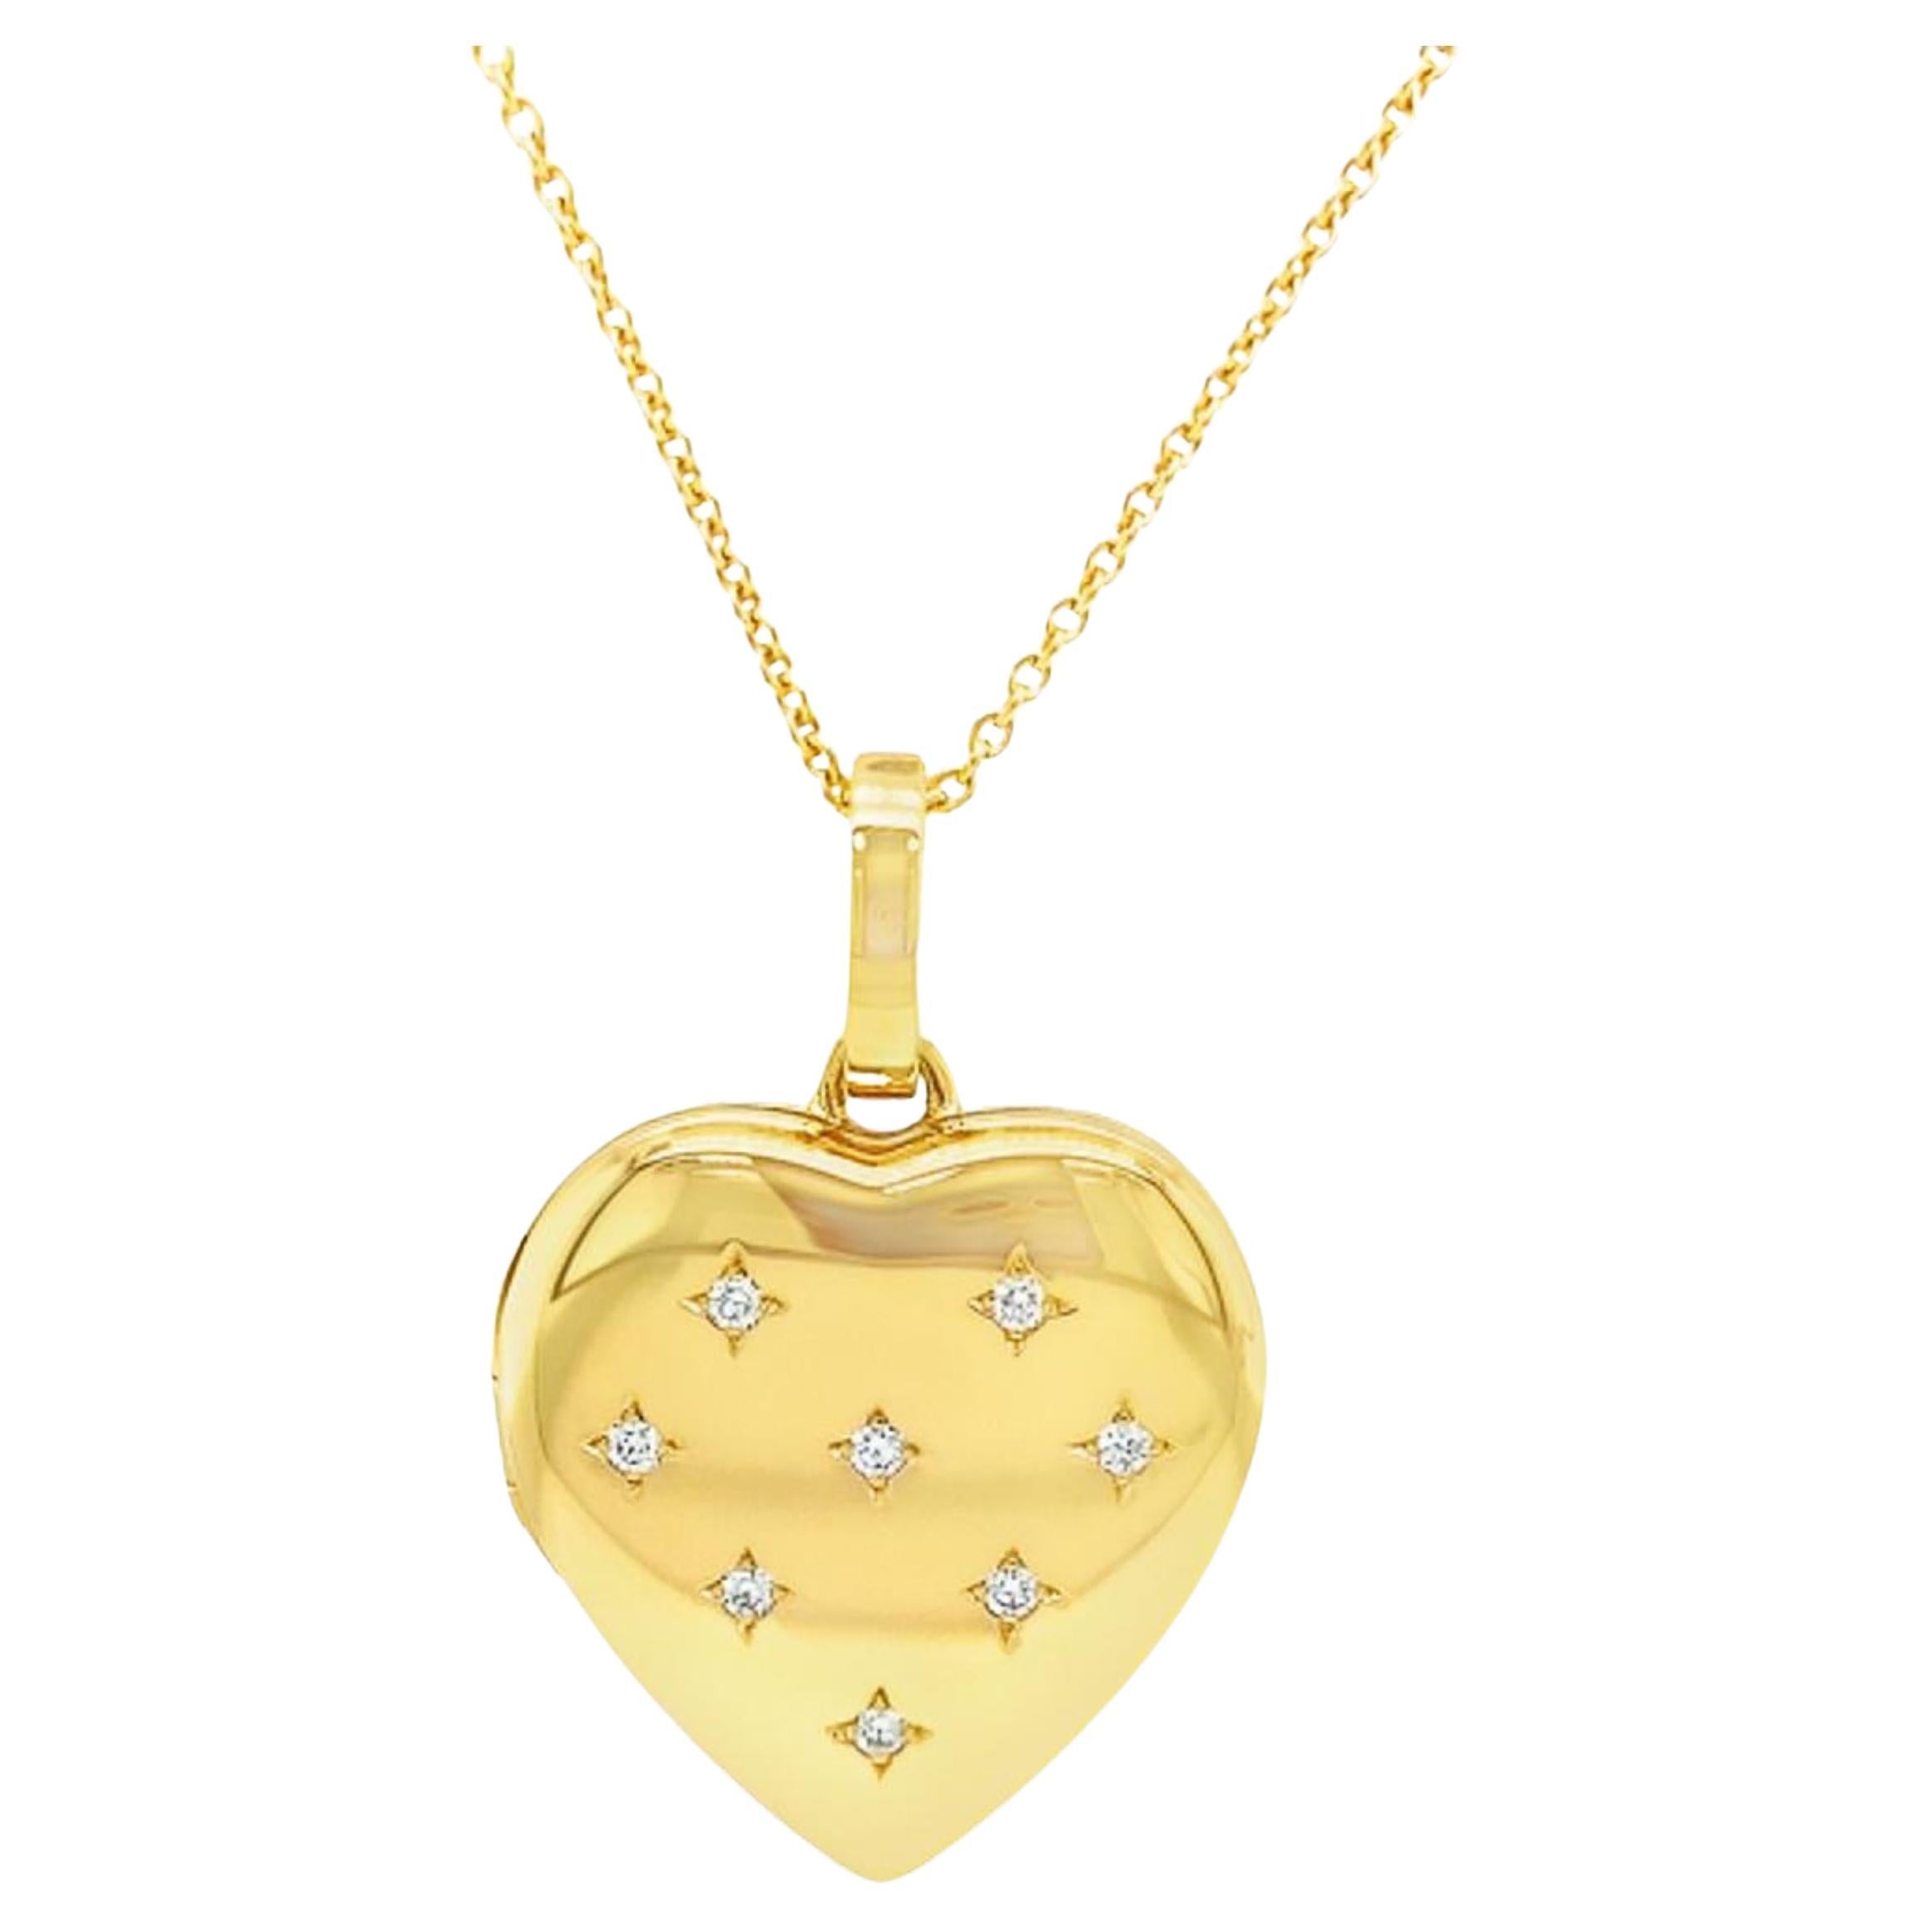 Herzförmige Medaillon-Halskette mit Anhänger, 18k Gelbgold, 8 Diamanten 0,16 Karat